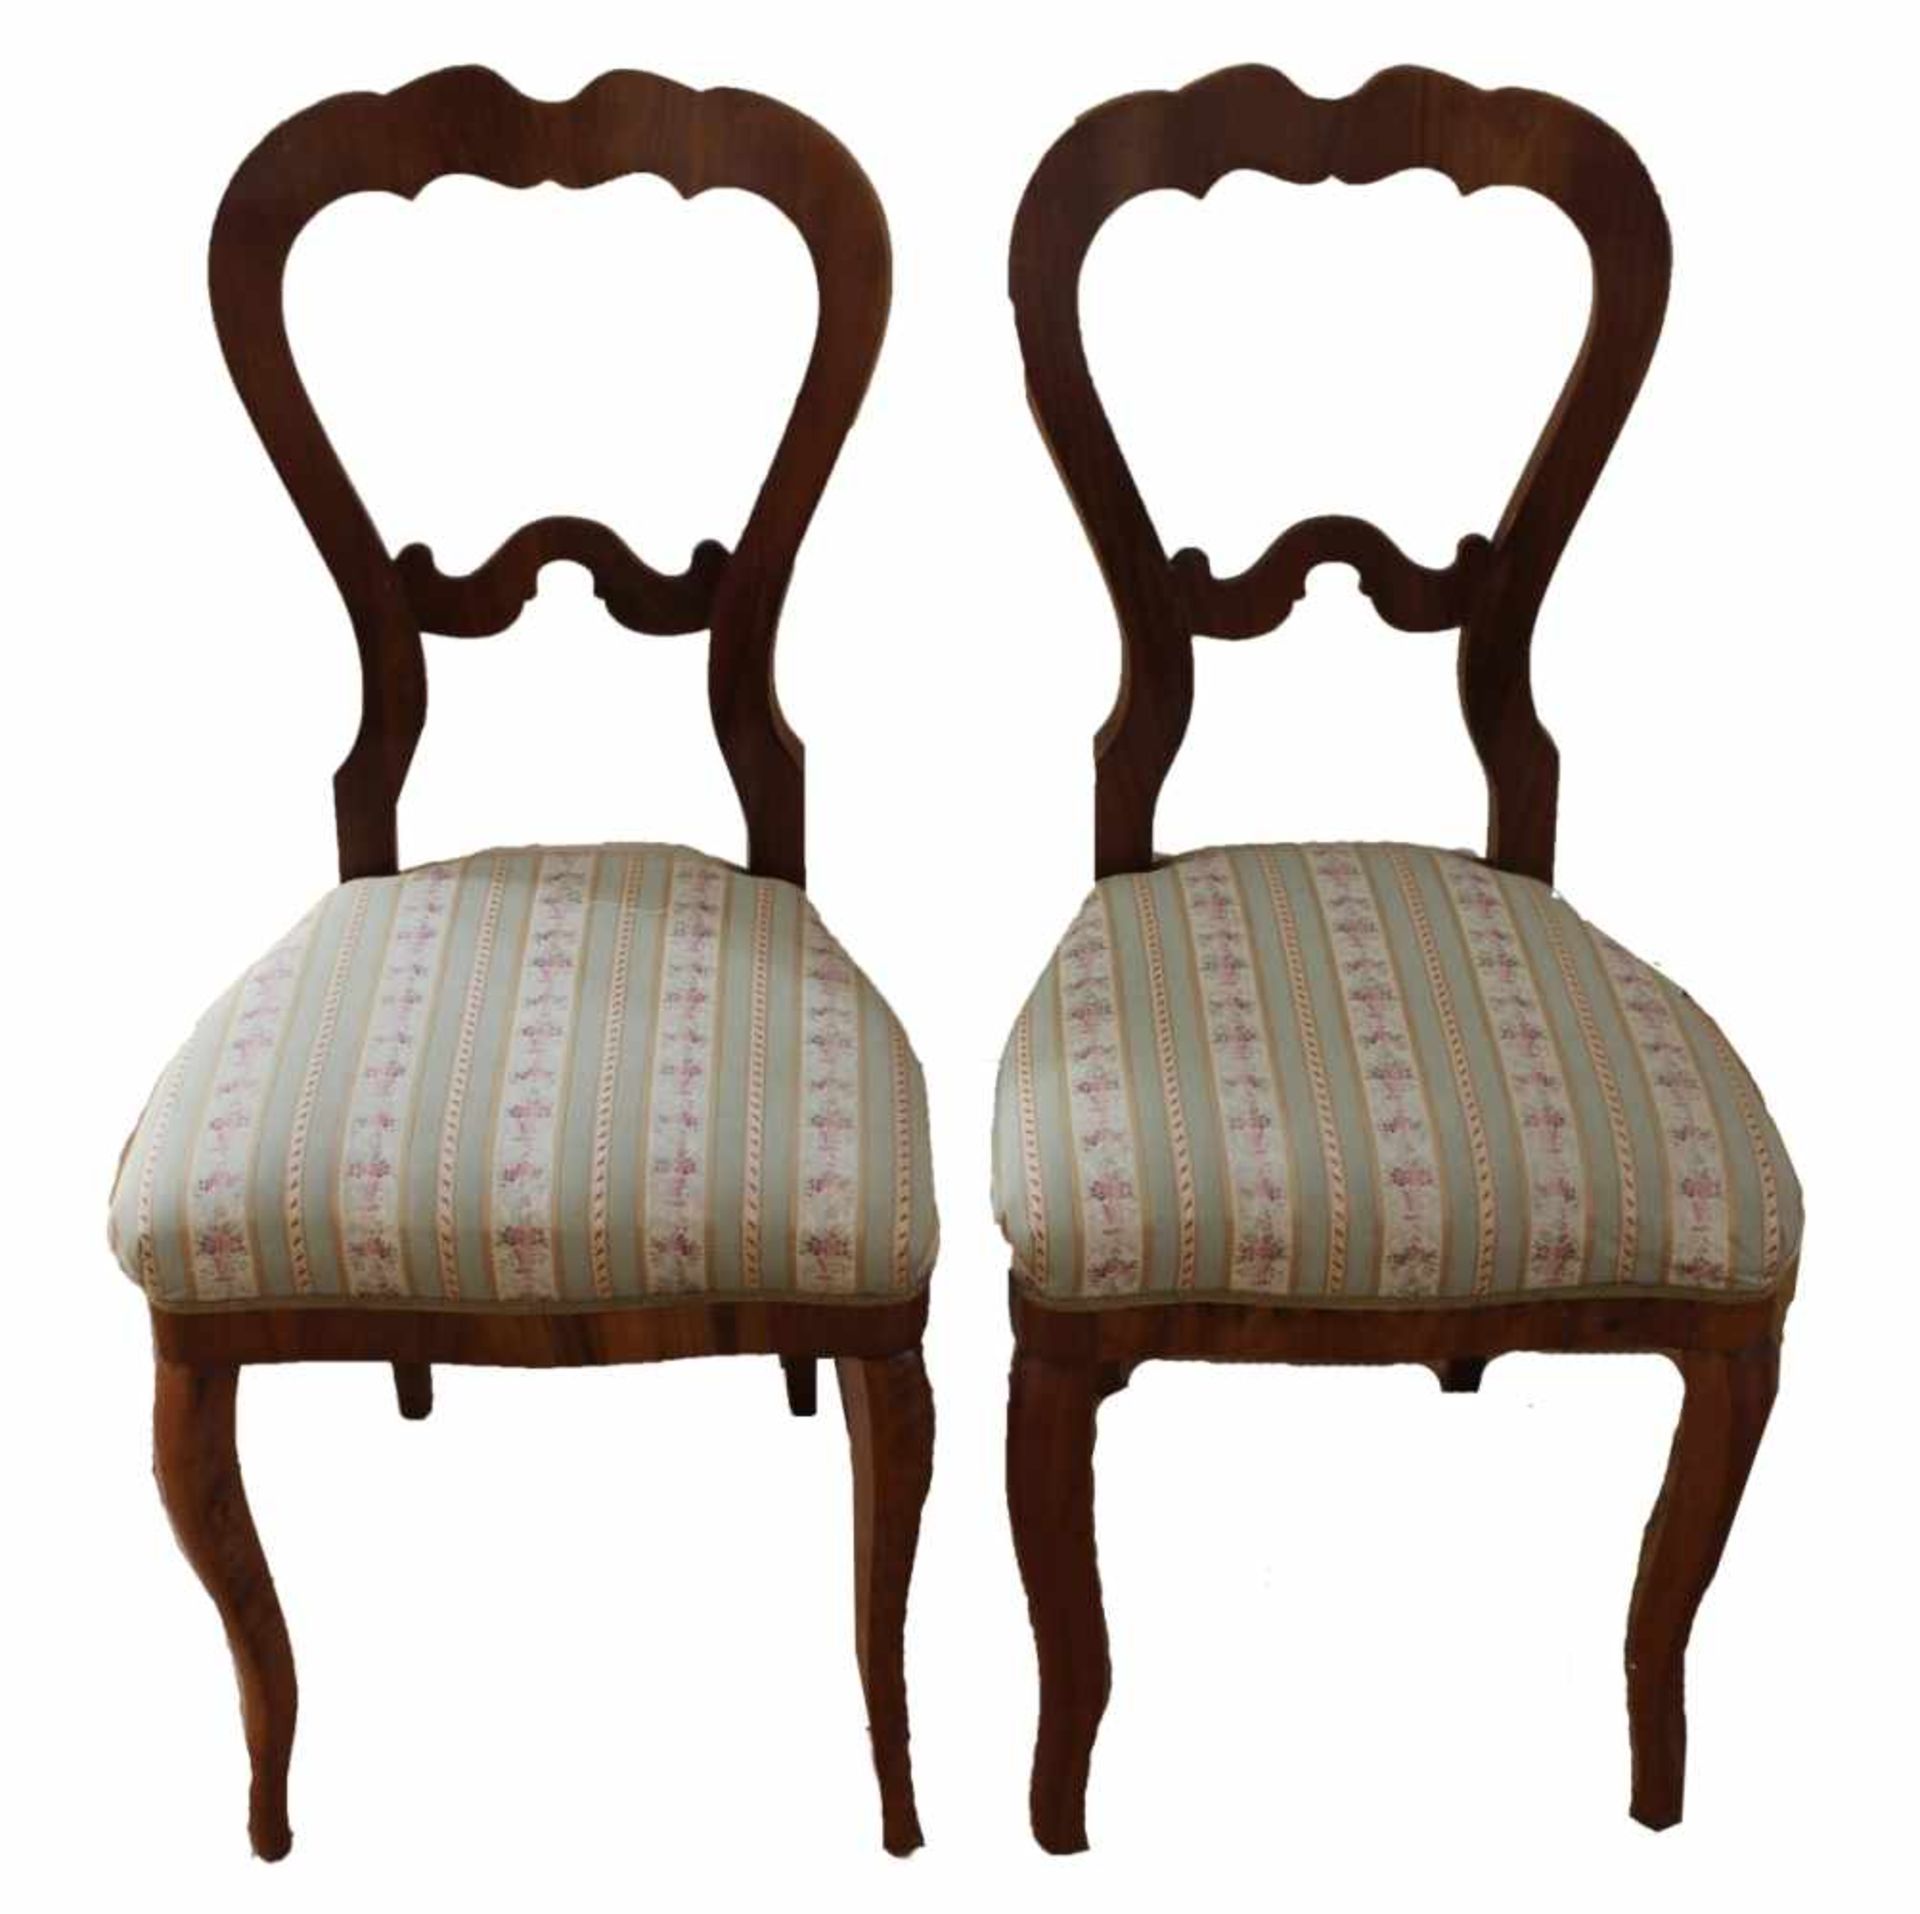 Paar Stühle - um 1870/80 Nußbaum furniert, geschweifte Ballonlehne mit Mittelsteg, ausgestellte